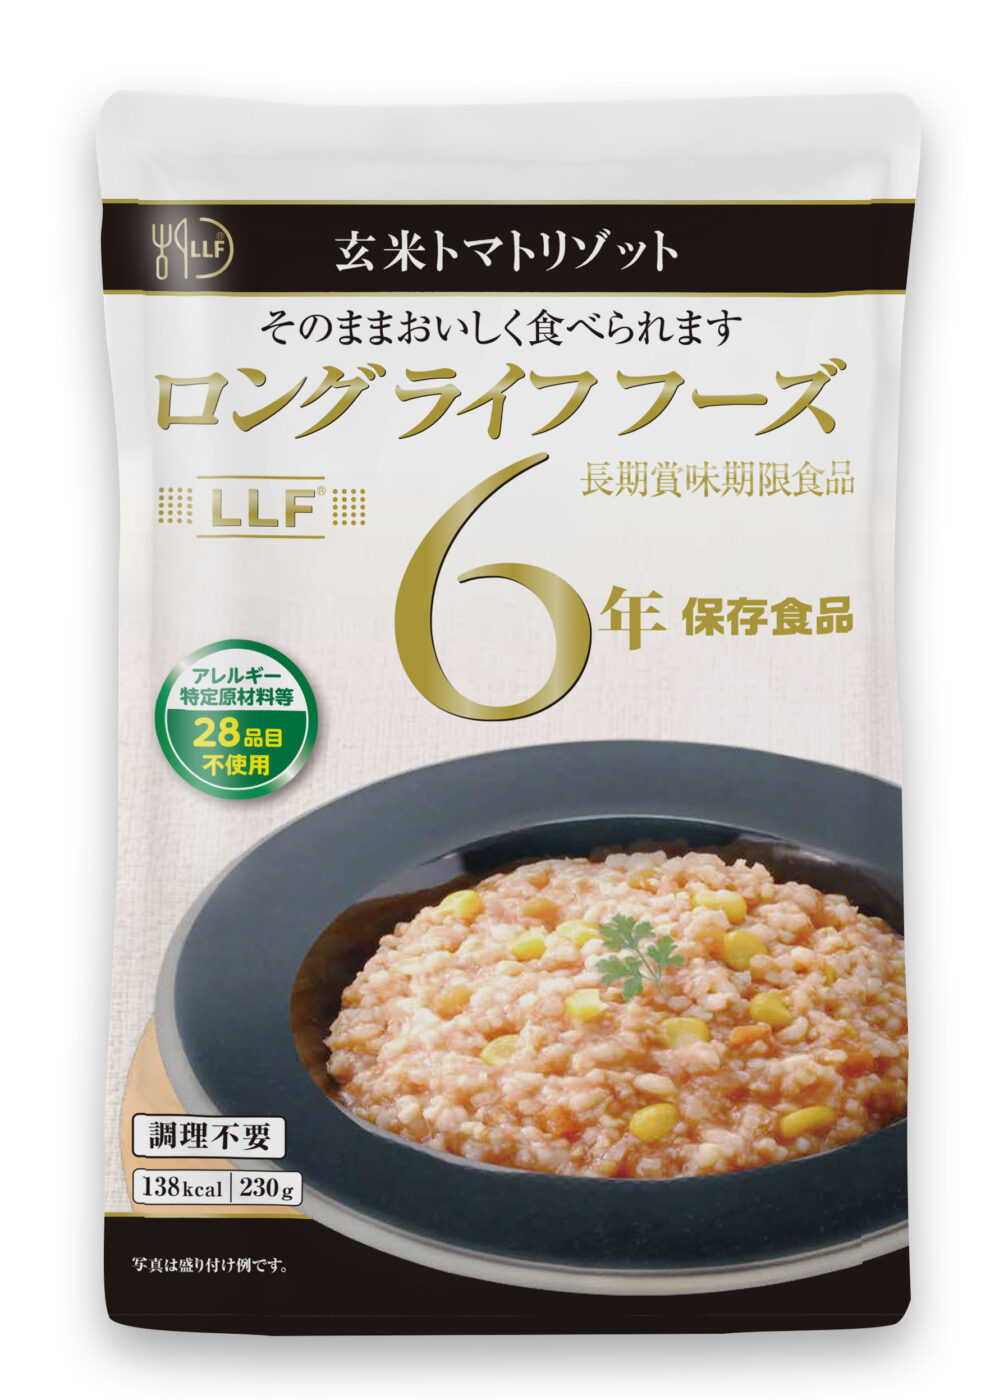 玄米トマトリゾット 非常食 保存食 災害 備蓄 メインディッシュ パッケージ LLC 玄米